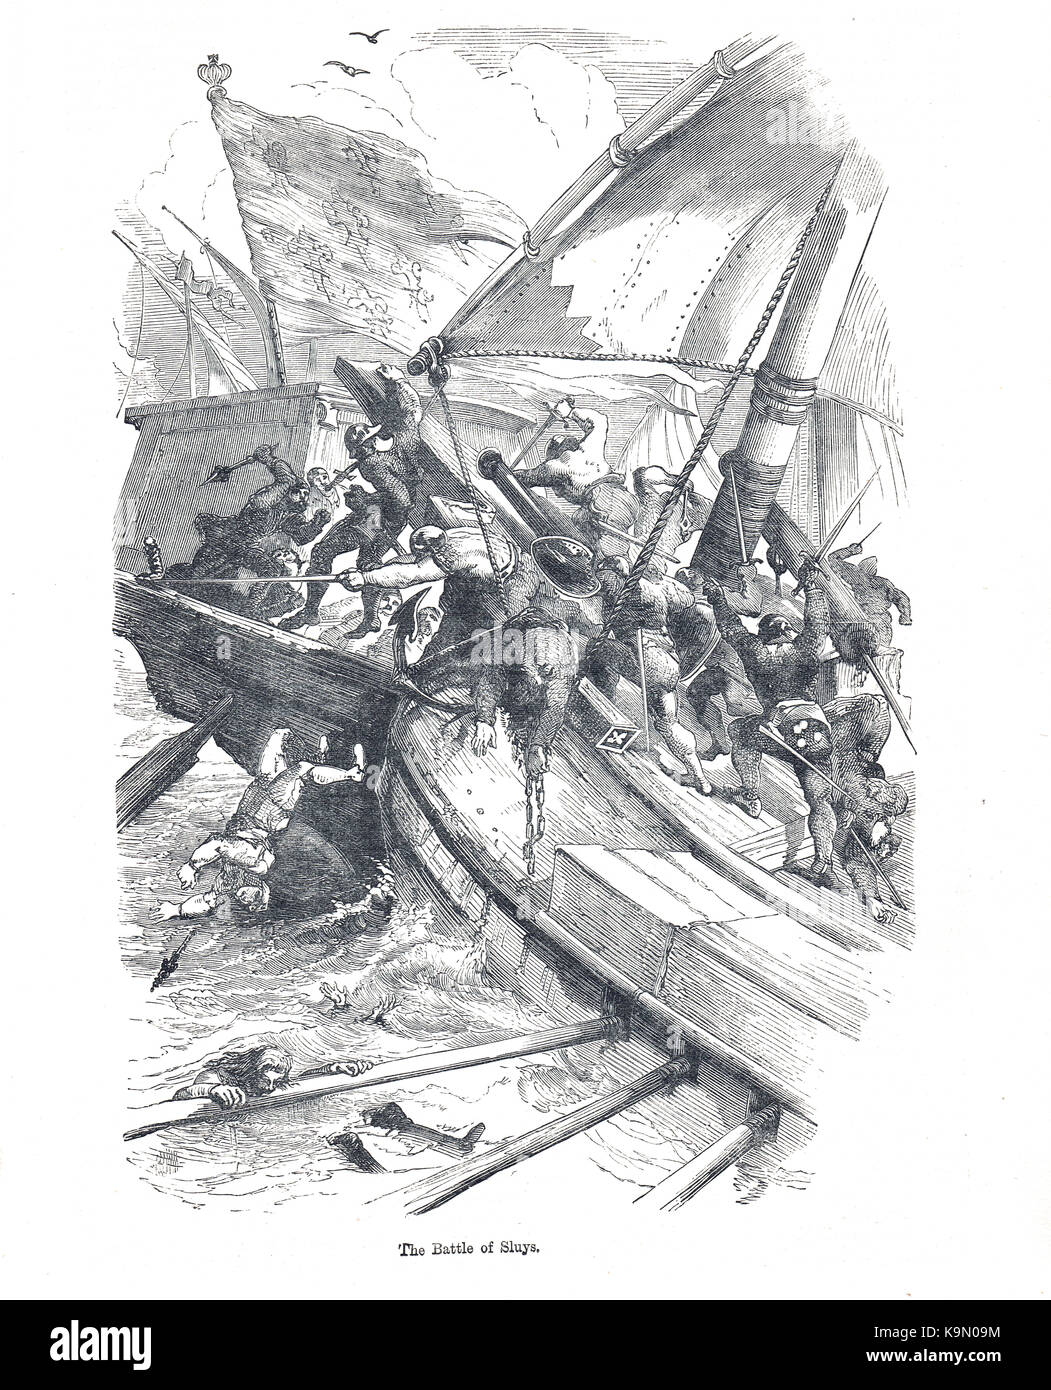 La battaglia di sluys, 24 giugno 1340. mare battaglia combattuta tra Inghilterra e Francia, uno dei conflitti di apertura dei cento anni di guerra Foto Stock